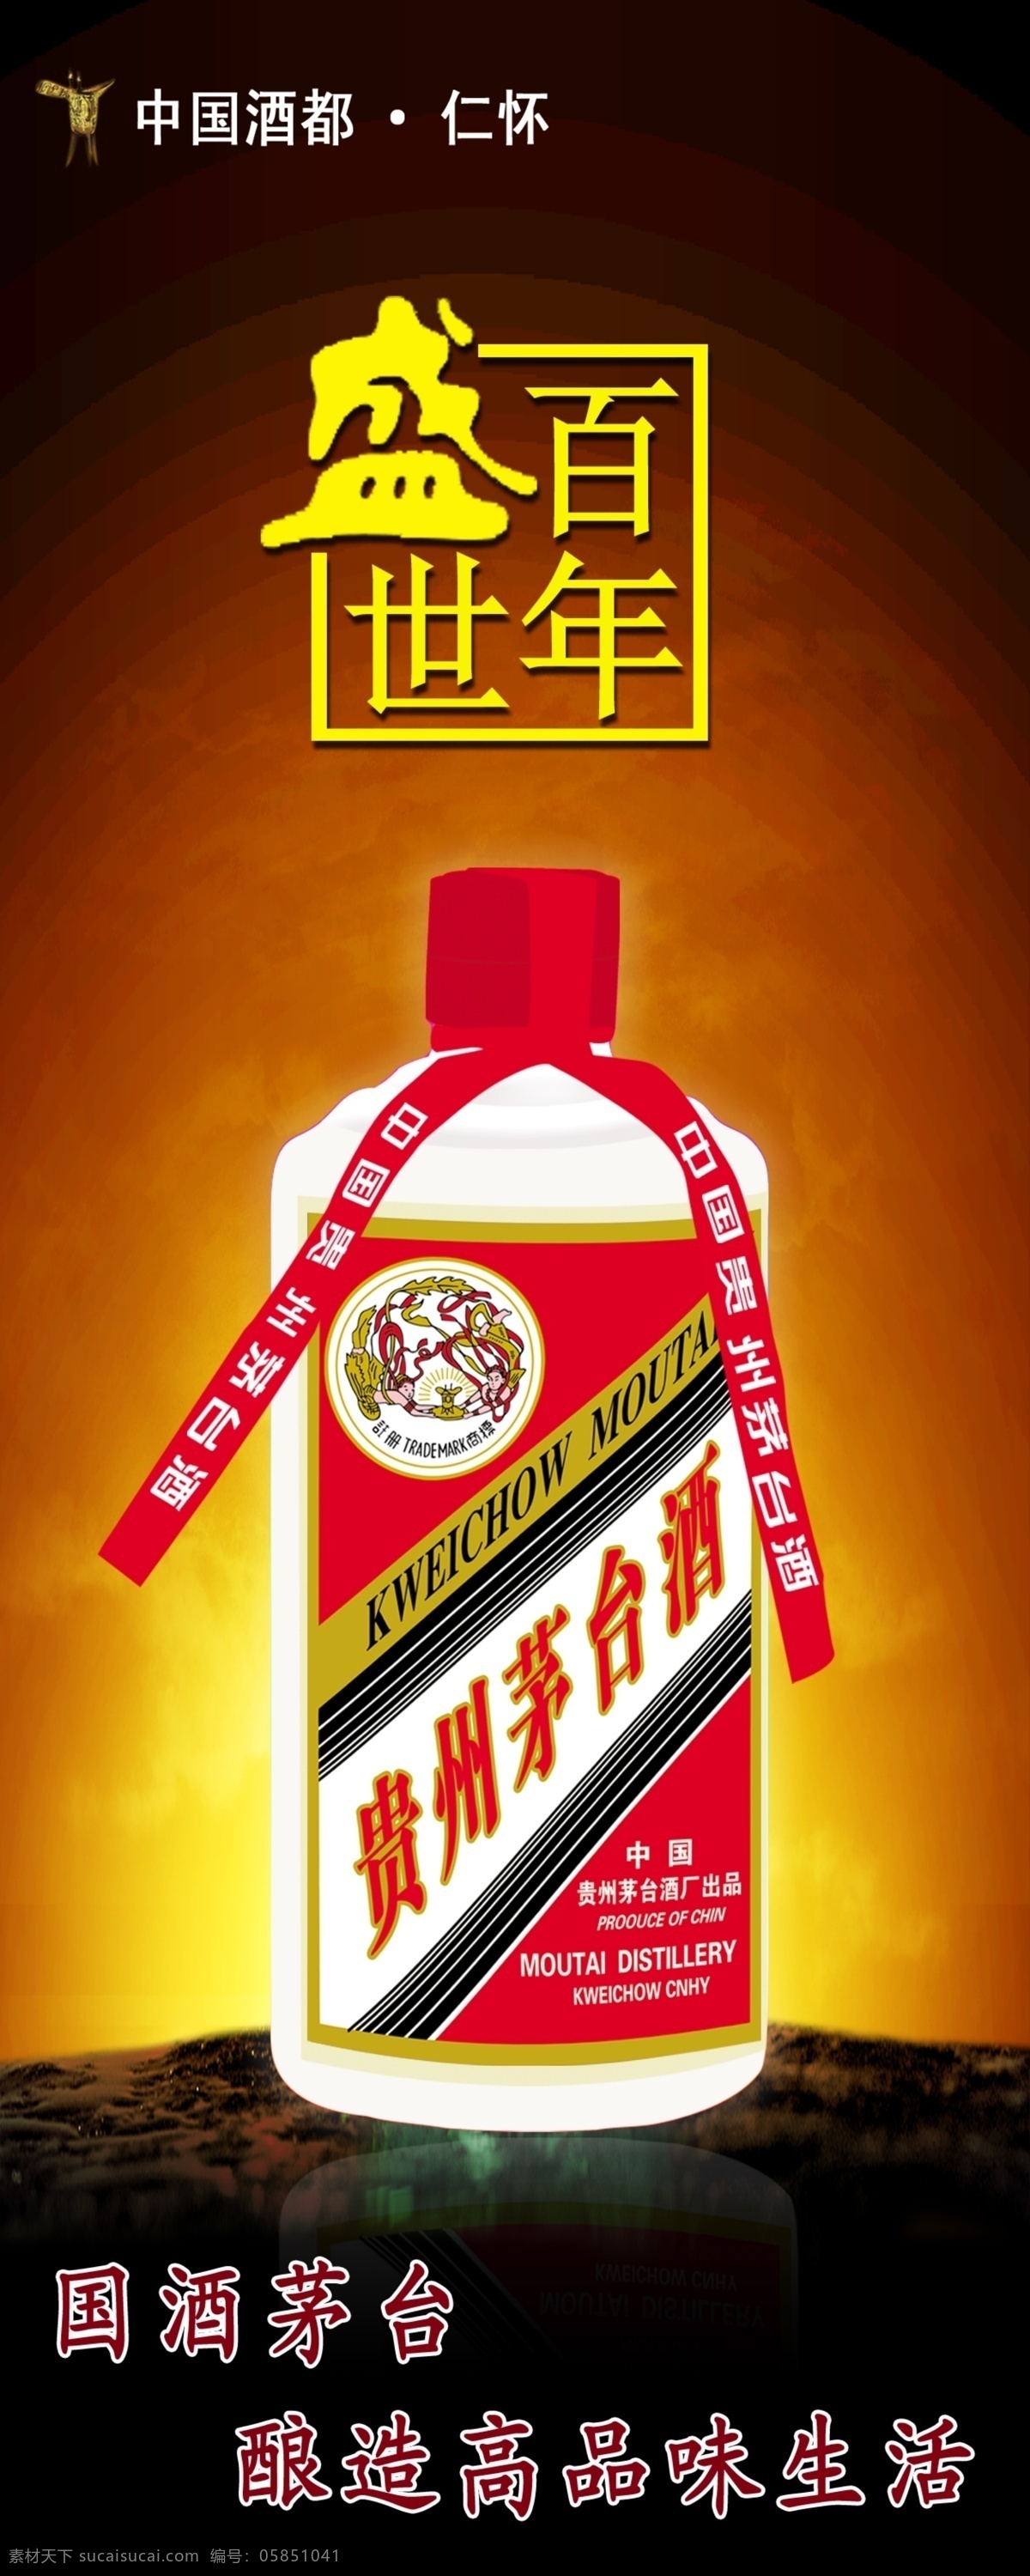 盛世 茅台酒 海报 中国酒都 茅台酒瓶 盛世百年 酒 广告设计模板 源文件